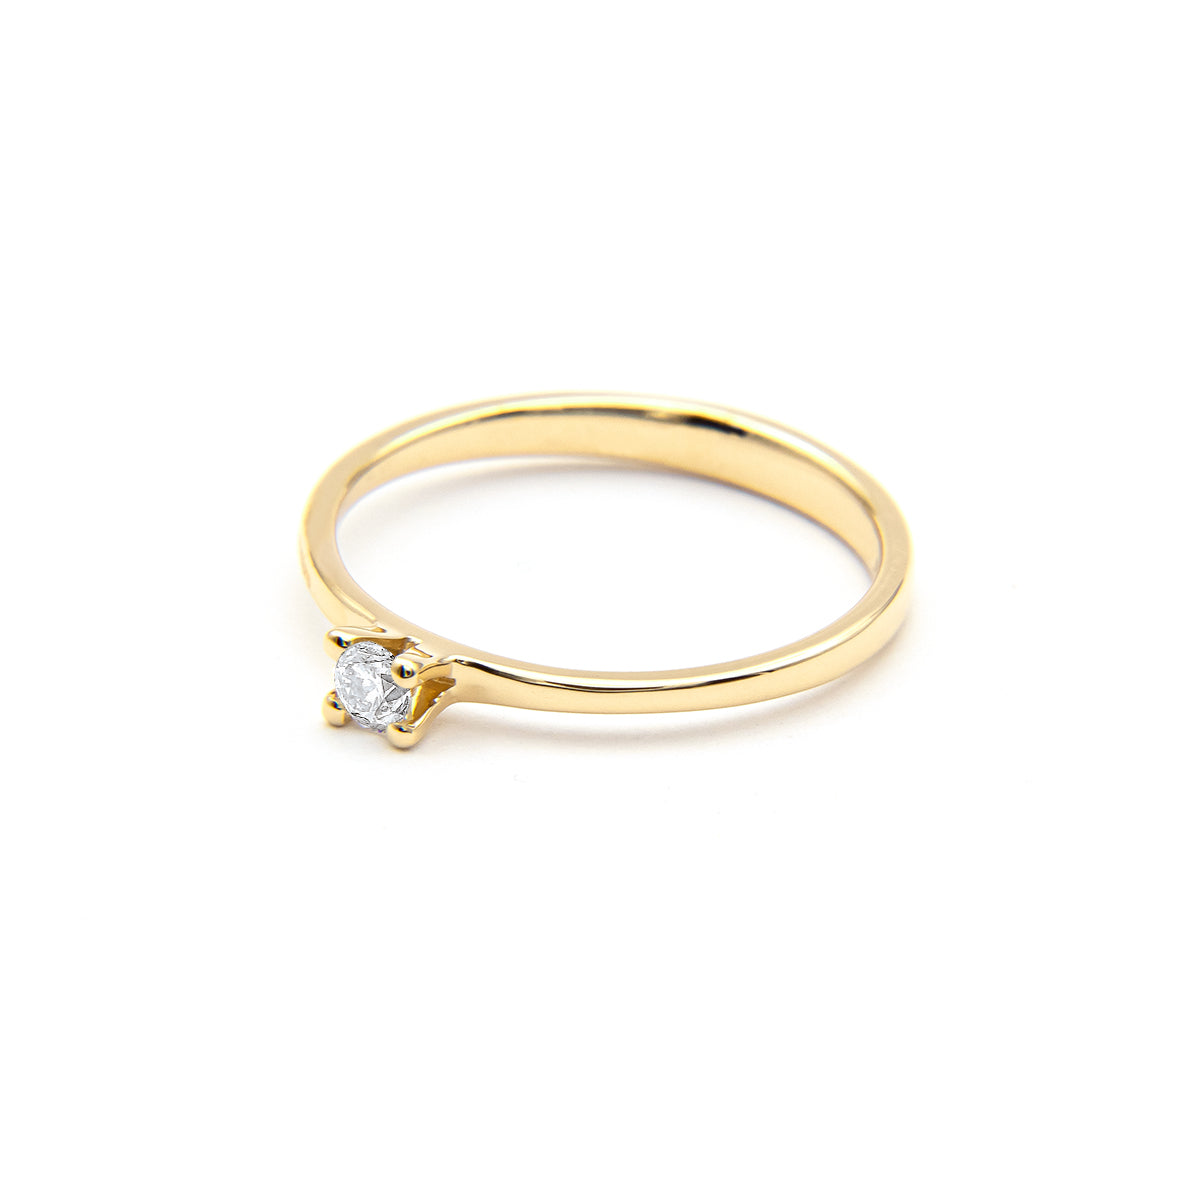 Belofte ring "1" in goud met briljant geslepen diamant 0.10ct.